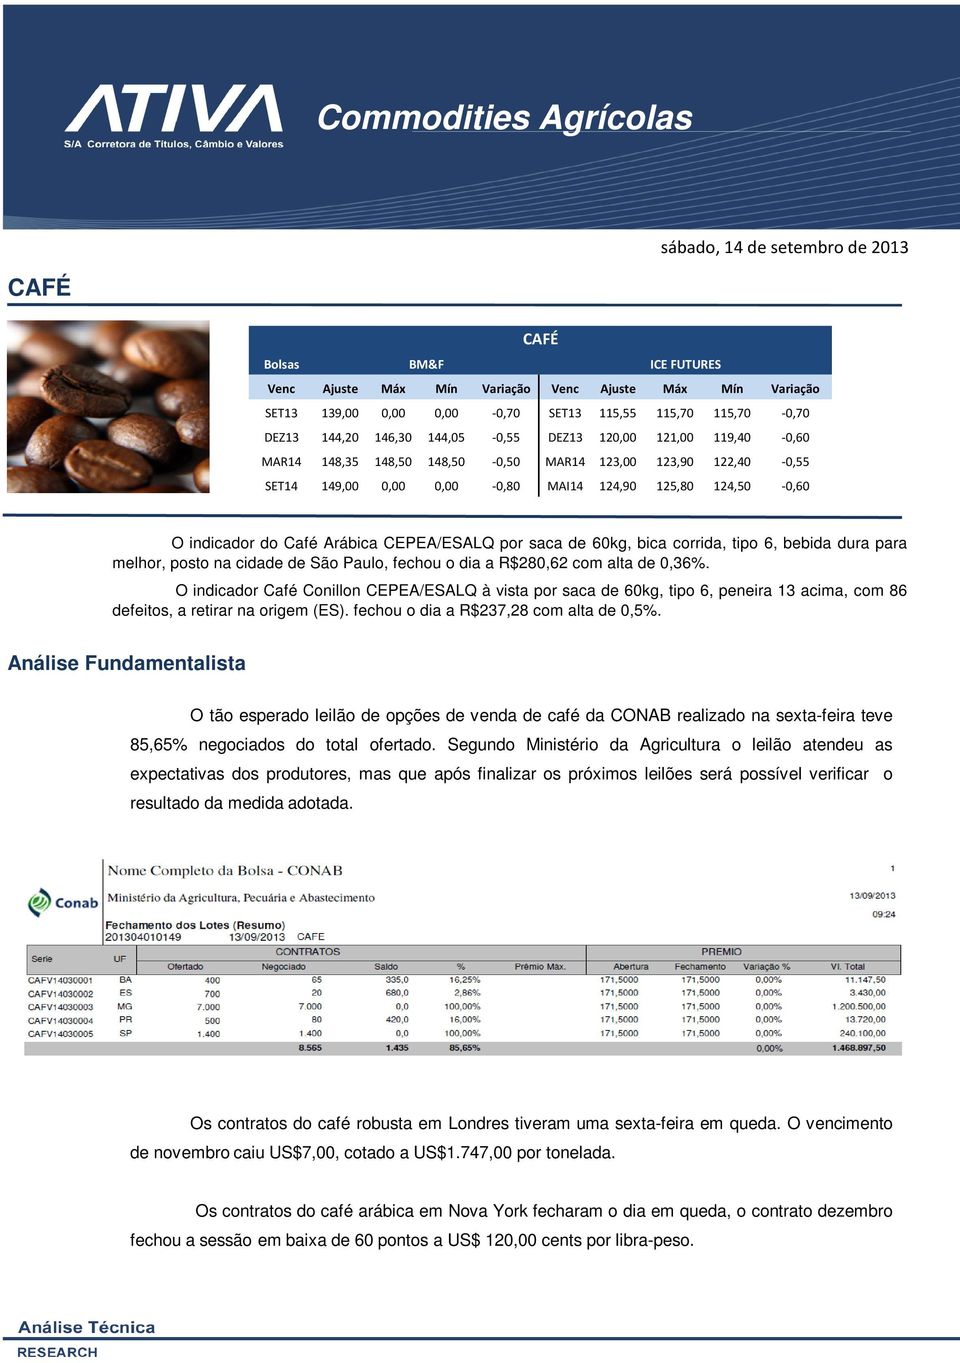 O indicador do Café Arábica CEPEA/ESALQ por saca de 60kg, bica corrida, tipo 6, bebida dura para melhor, posto na cidade de São Paulo, fechou o dia a R$280,62 com alta de 0,36%.